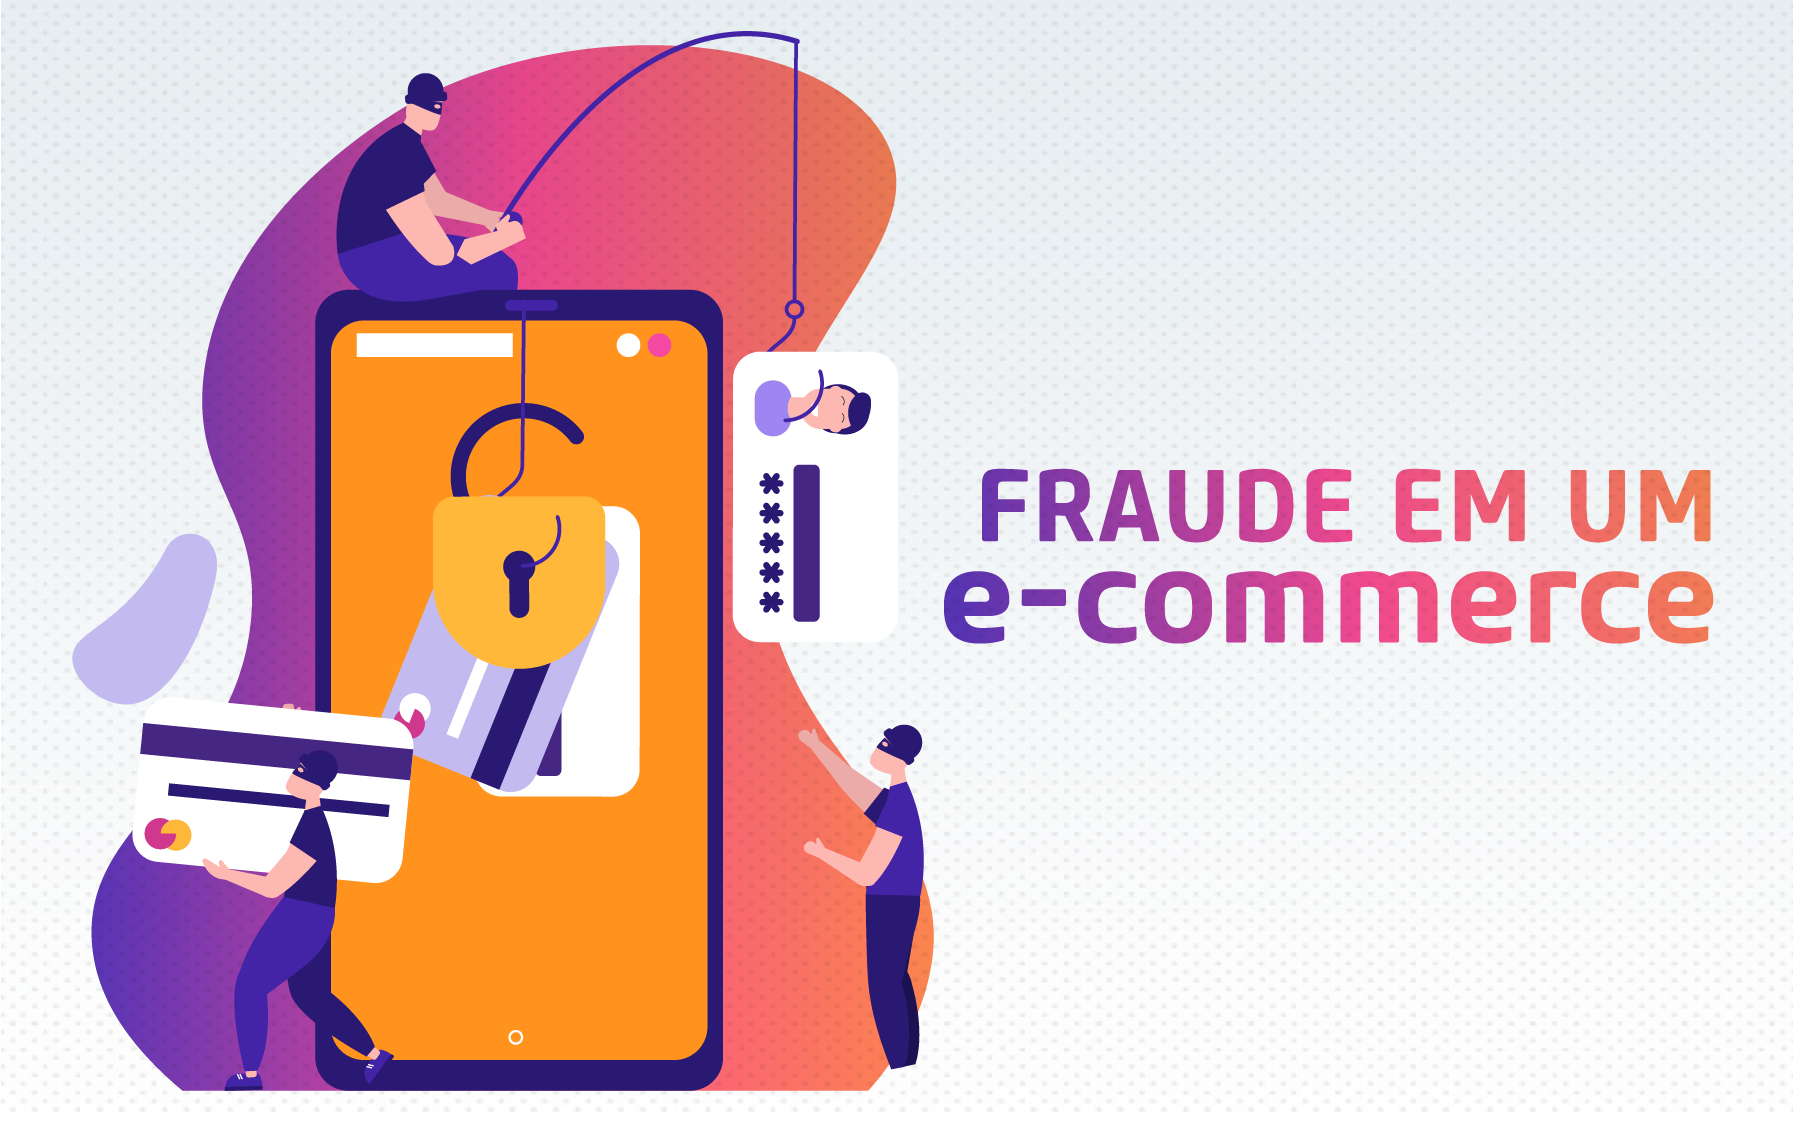 Ebook 3 | Os 3 erros comuns ao tentar reduzir a fraude